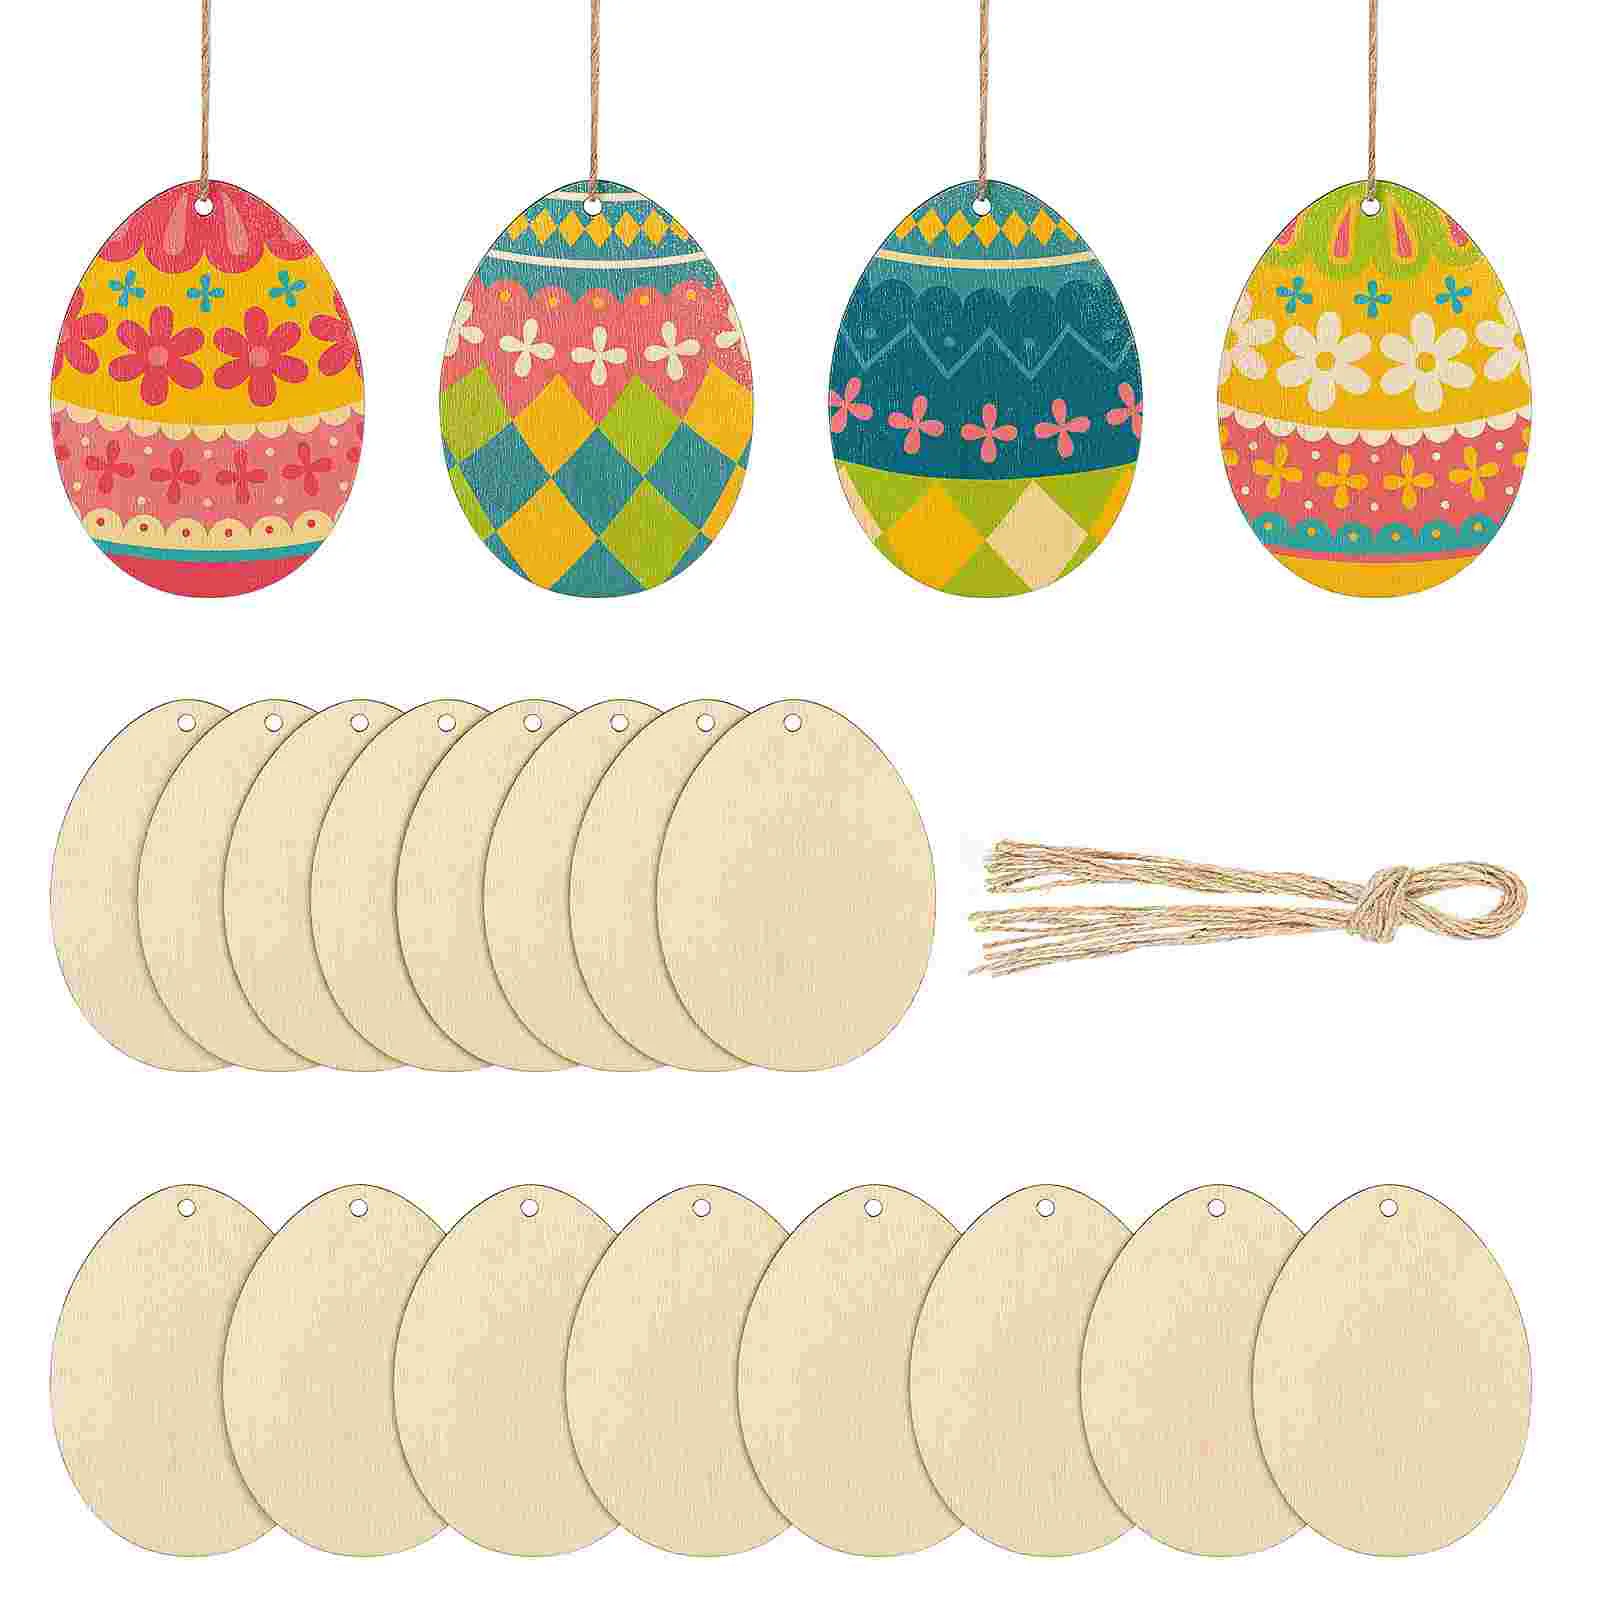 

20 Pcs Home Accessories Egg Hanging Ornaments Decoraciones Para Salas Casa Flats Bulk Decorations Wood Chips Wooden Easter Eggs